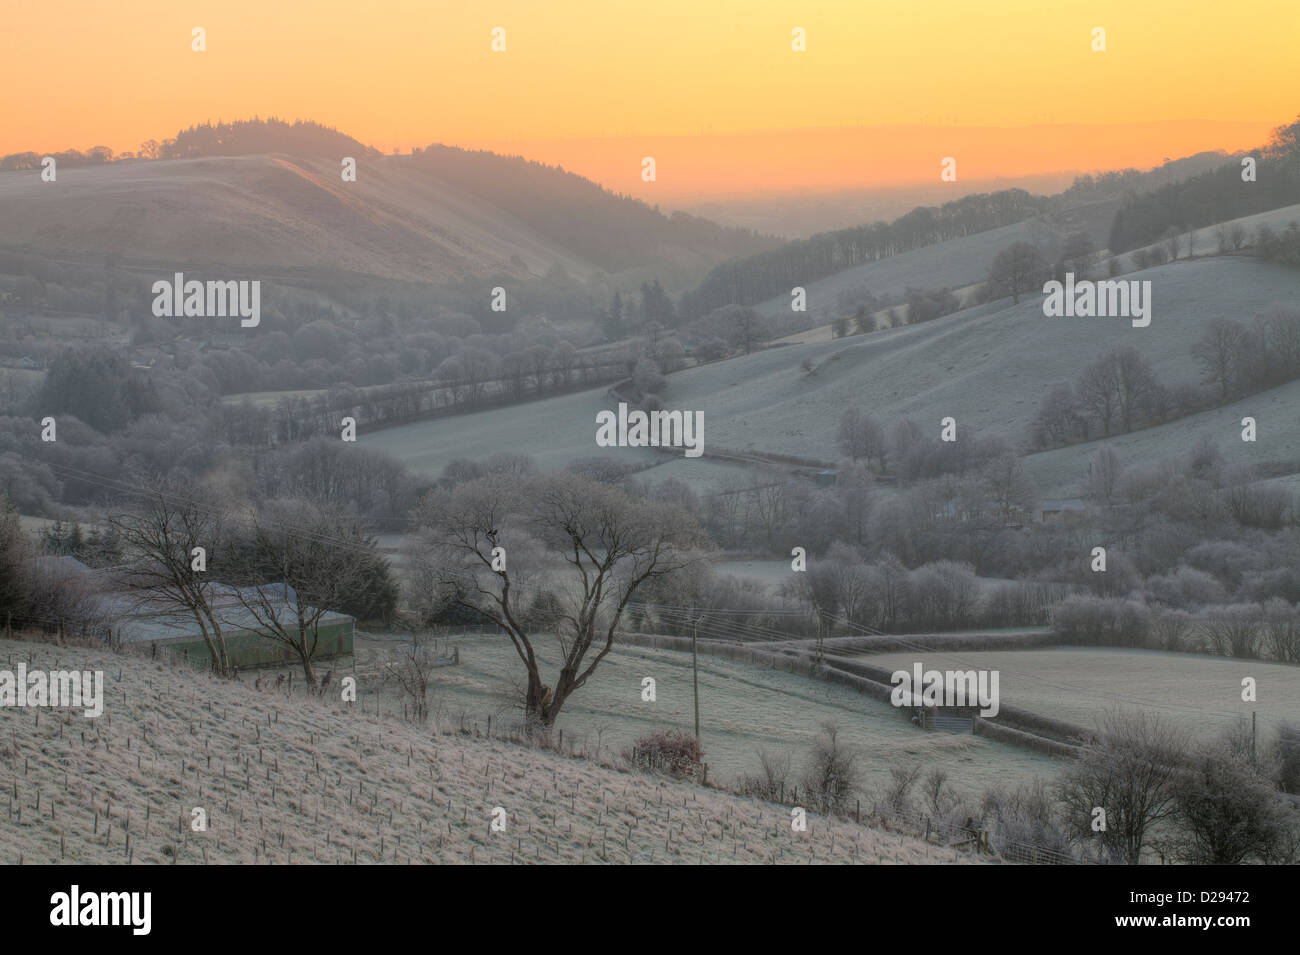 Vue sur vallée avec gel avant l'aube, le soleil se lever sur le far hills. La Severn (vallée de Hafren). Près de Llanidloes, Powys, Wales Banque D'Images